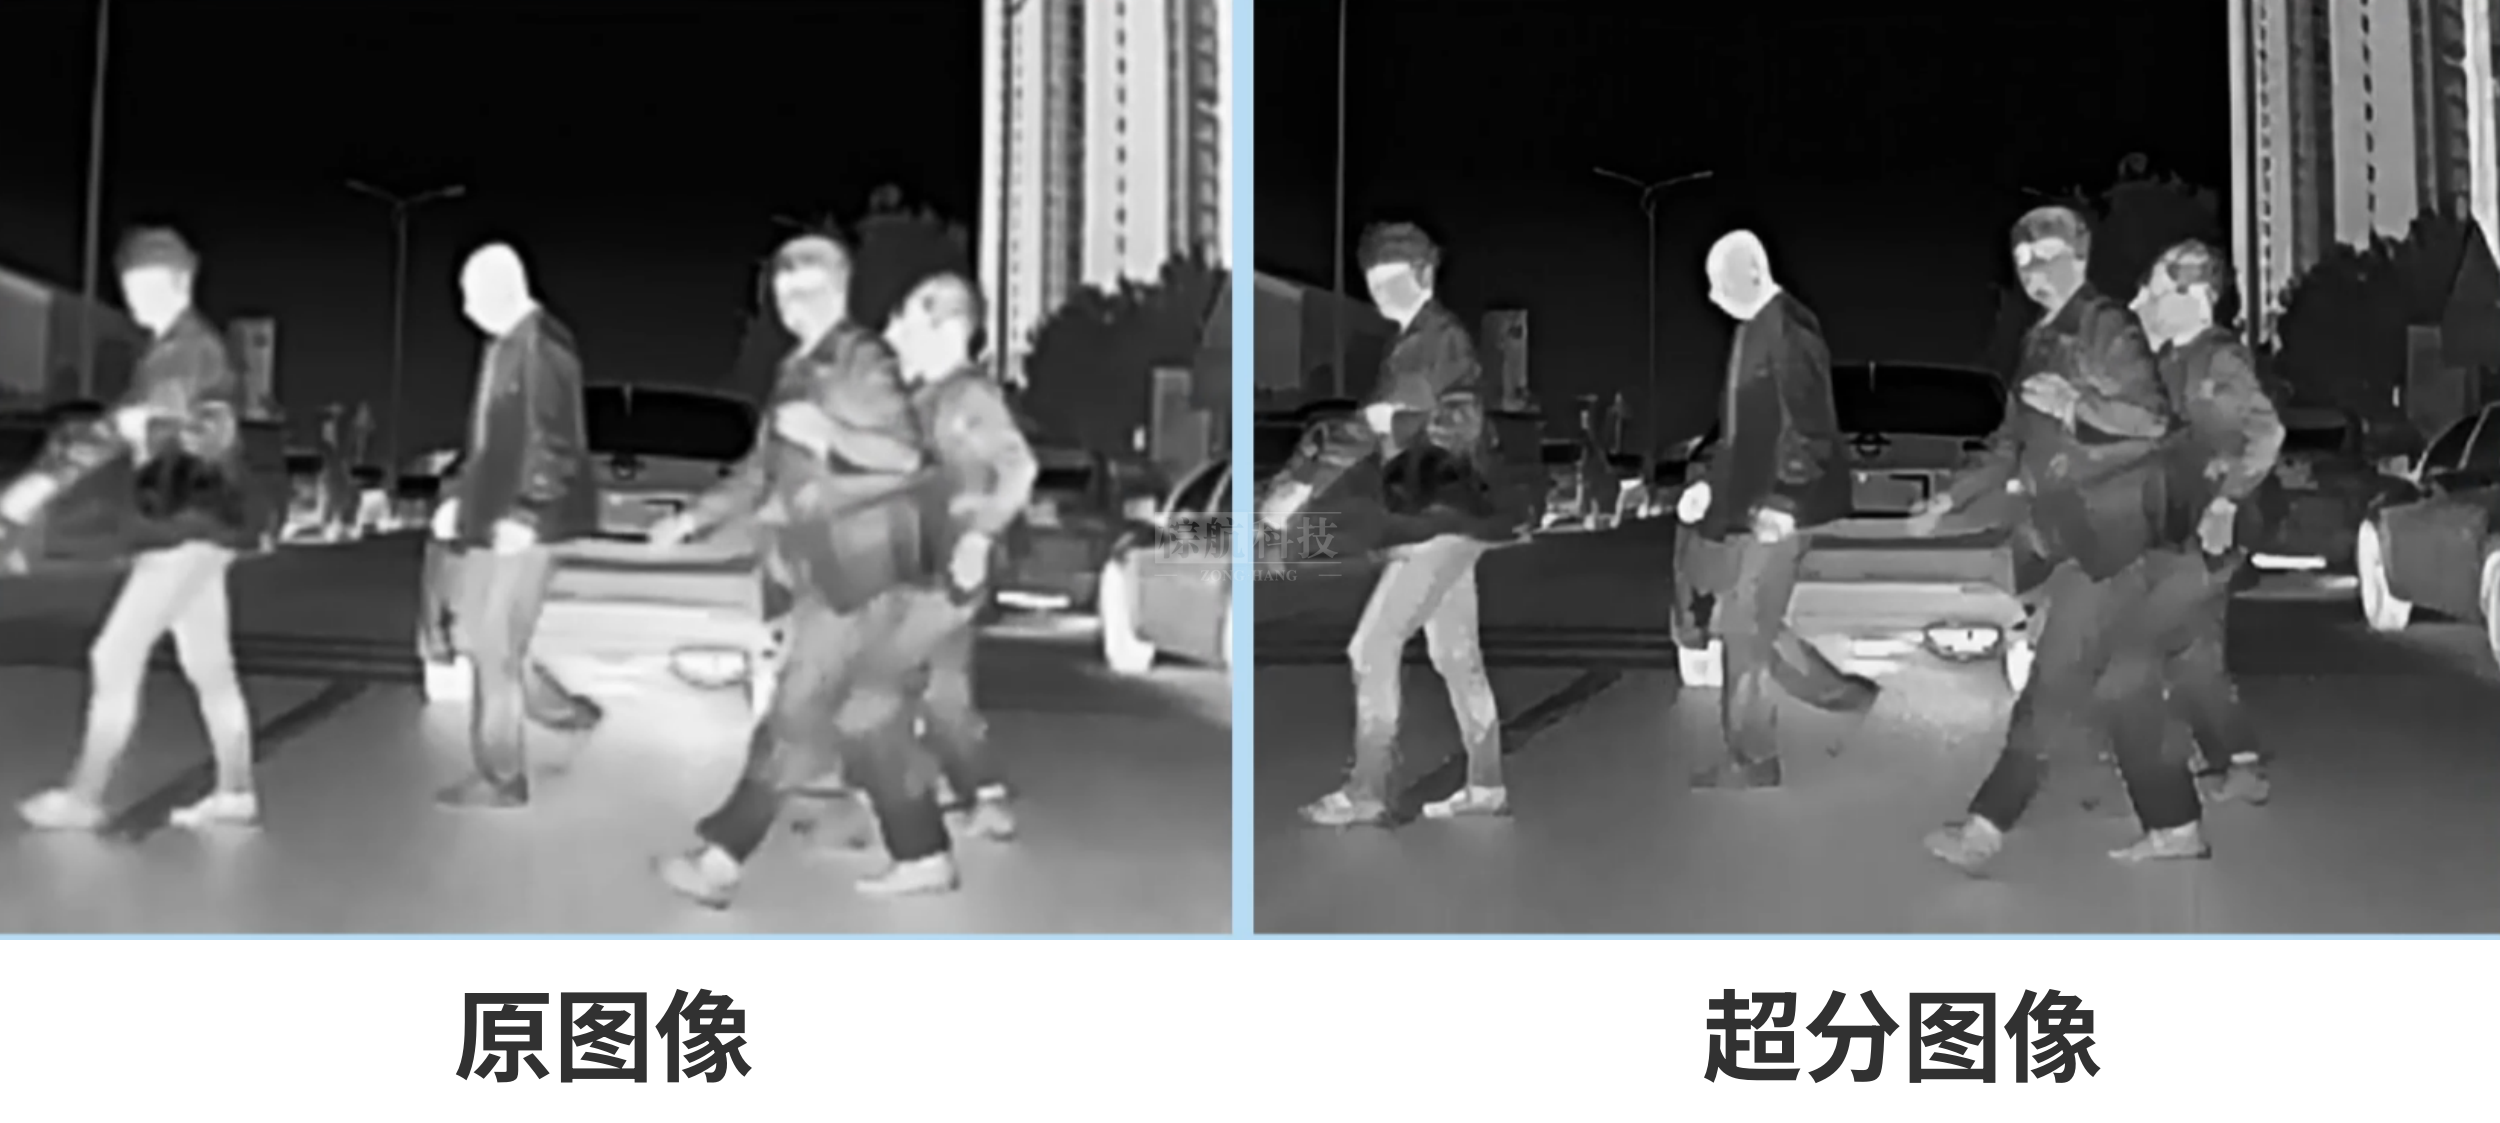 艾睿NV2汽车AI夜视系统画质清晰度提升150%以上.png